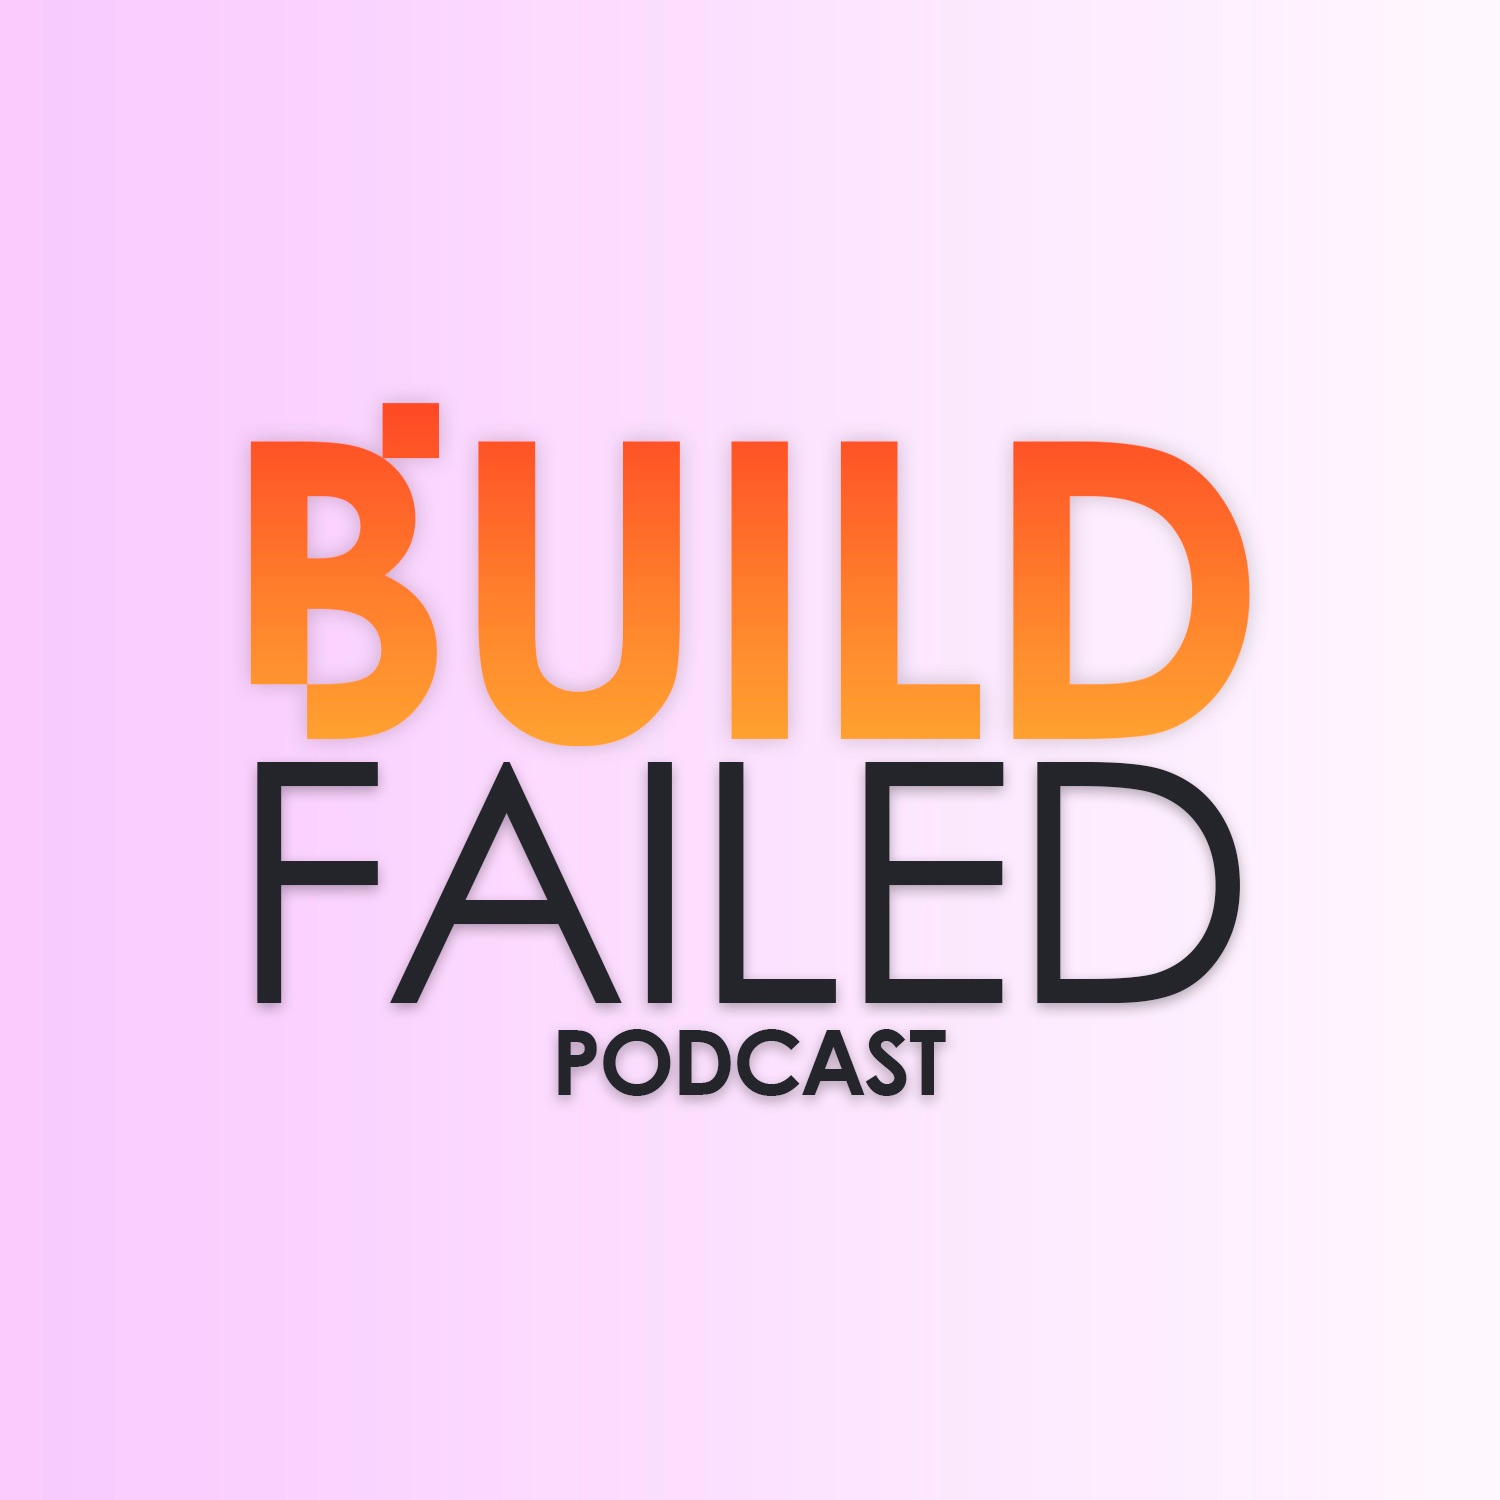 Build Failed Podcast